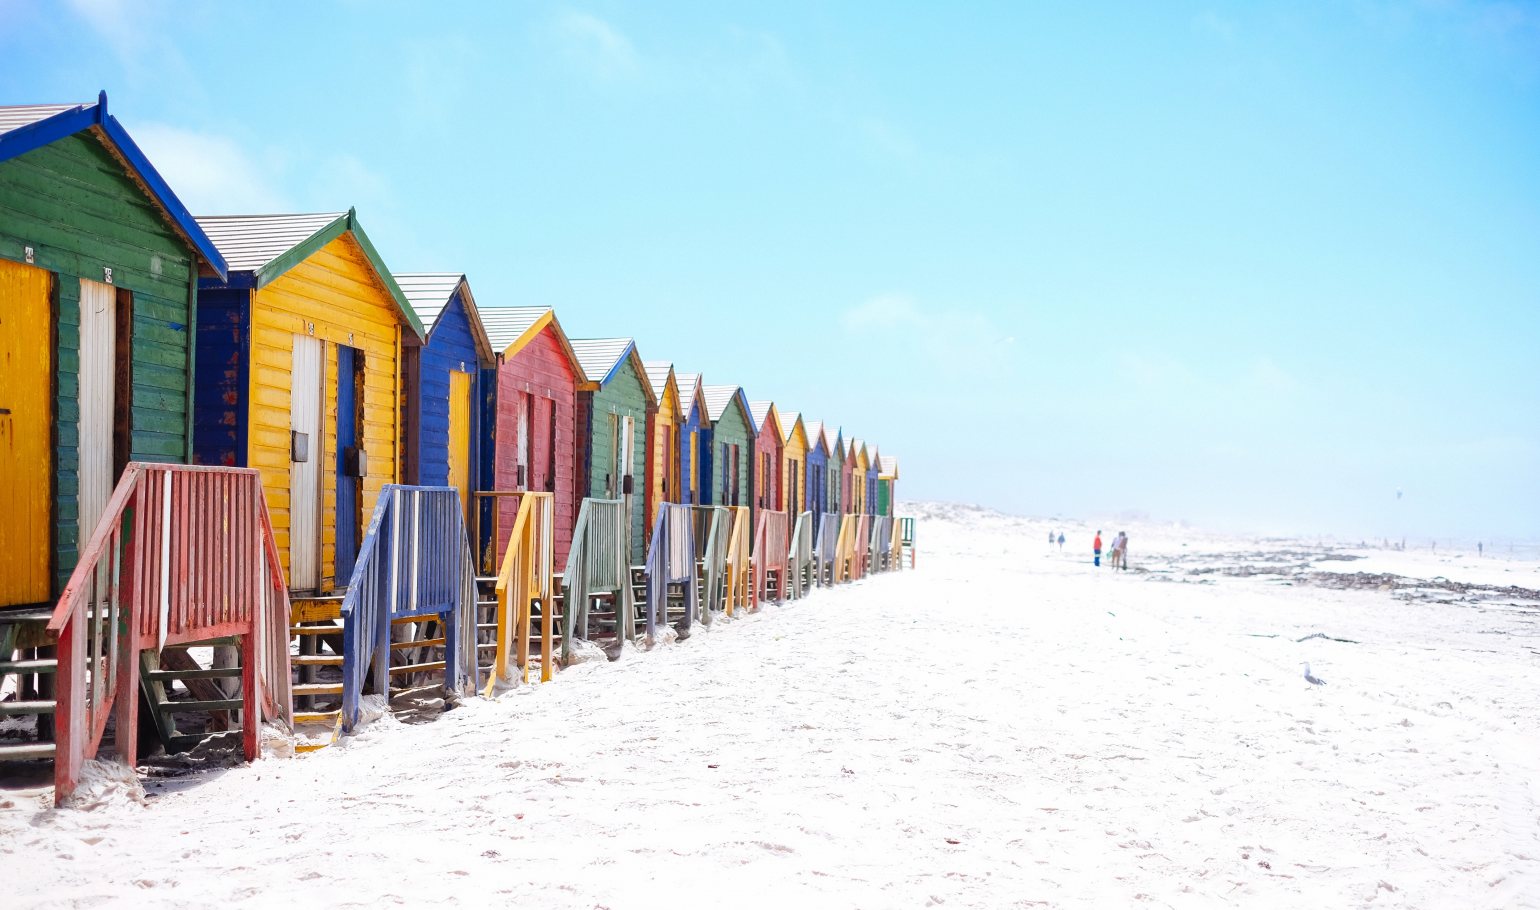 Colourful beach huts on a white sandy beach